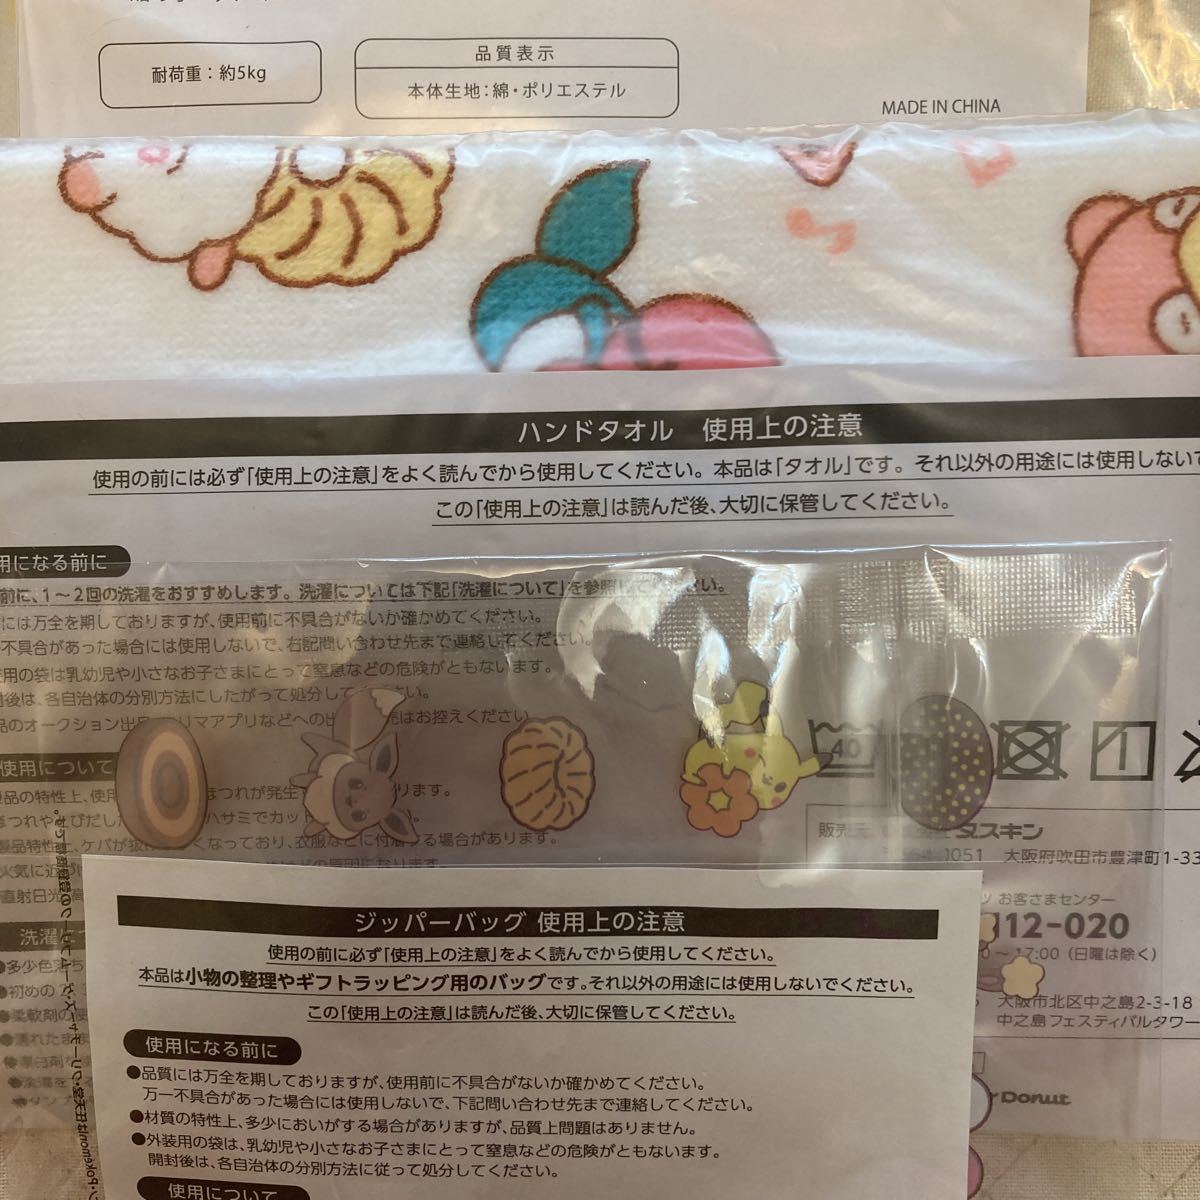  ошибка do Pokemon эко-сумка большая сумка полотенце для рук молния сумка 4 пункт не использовался бесплатная доставка Mister Donut лотерейный мешок Pocket Monster 